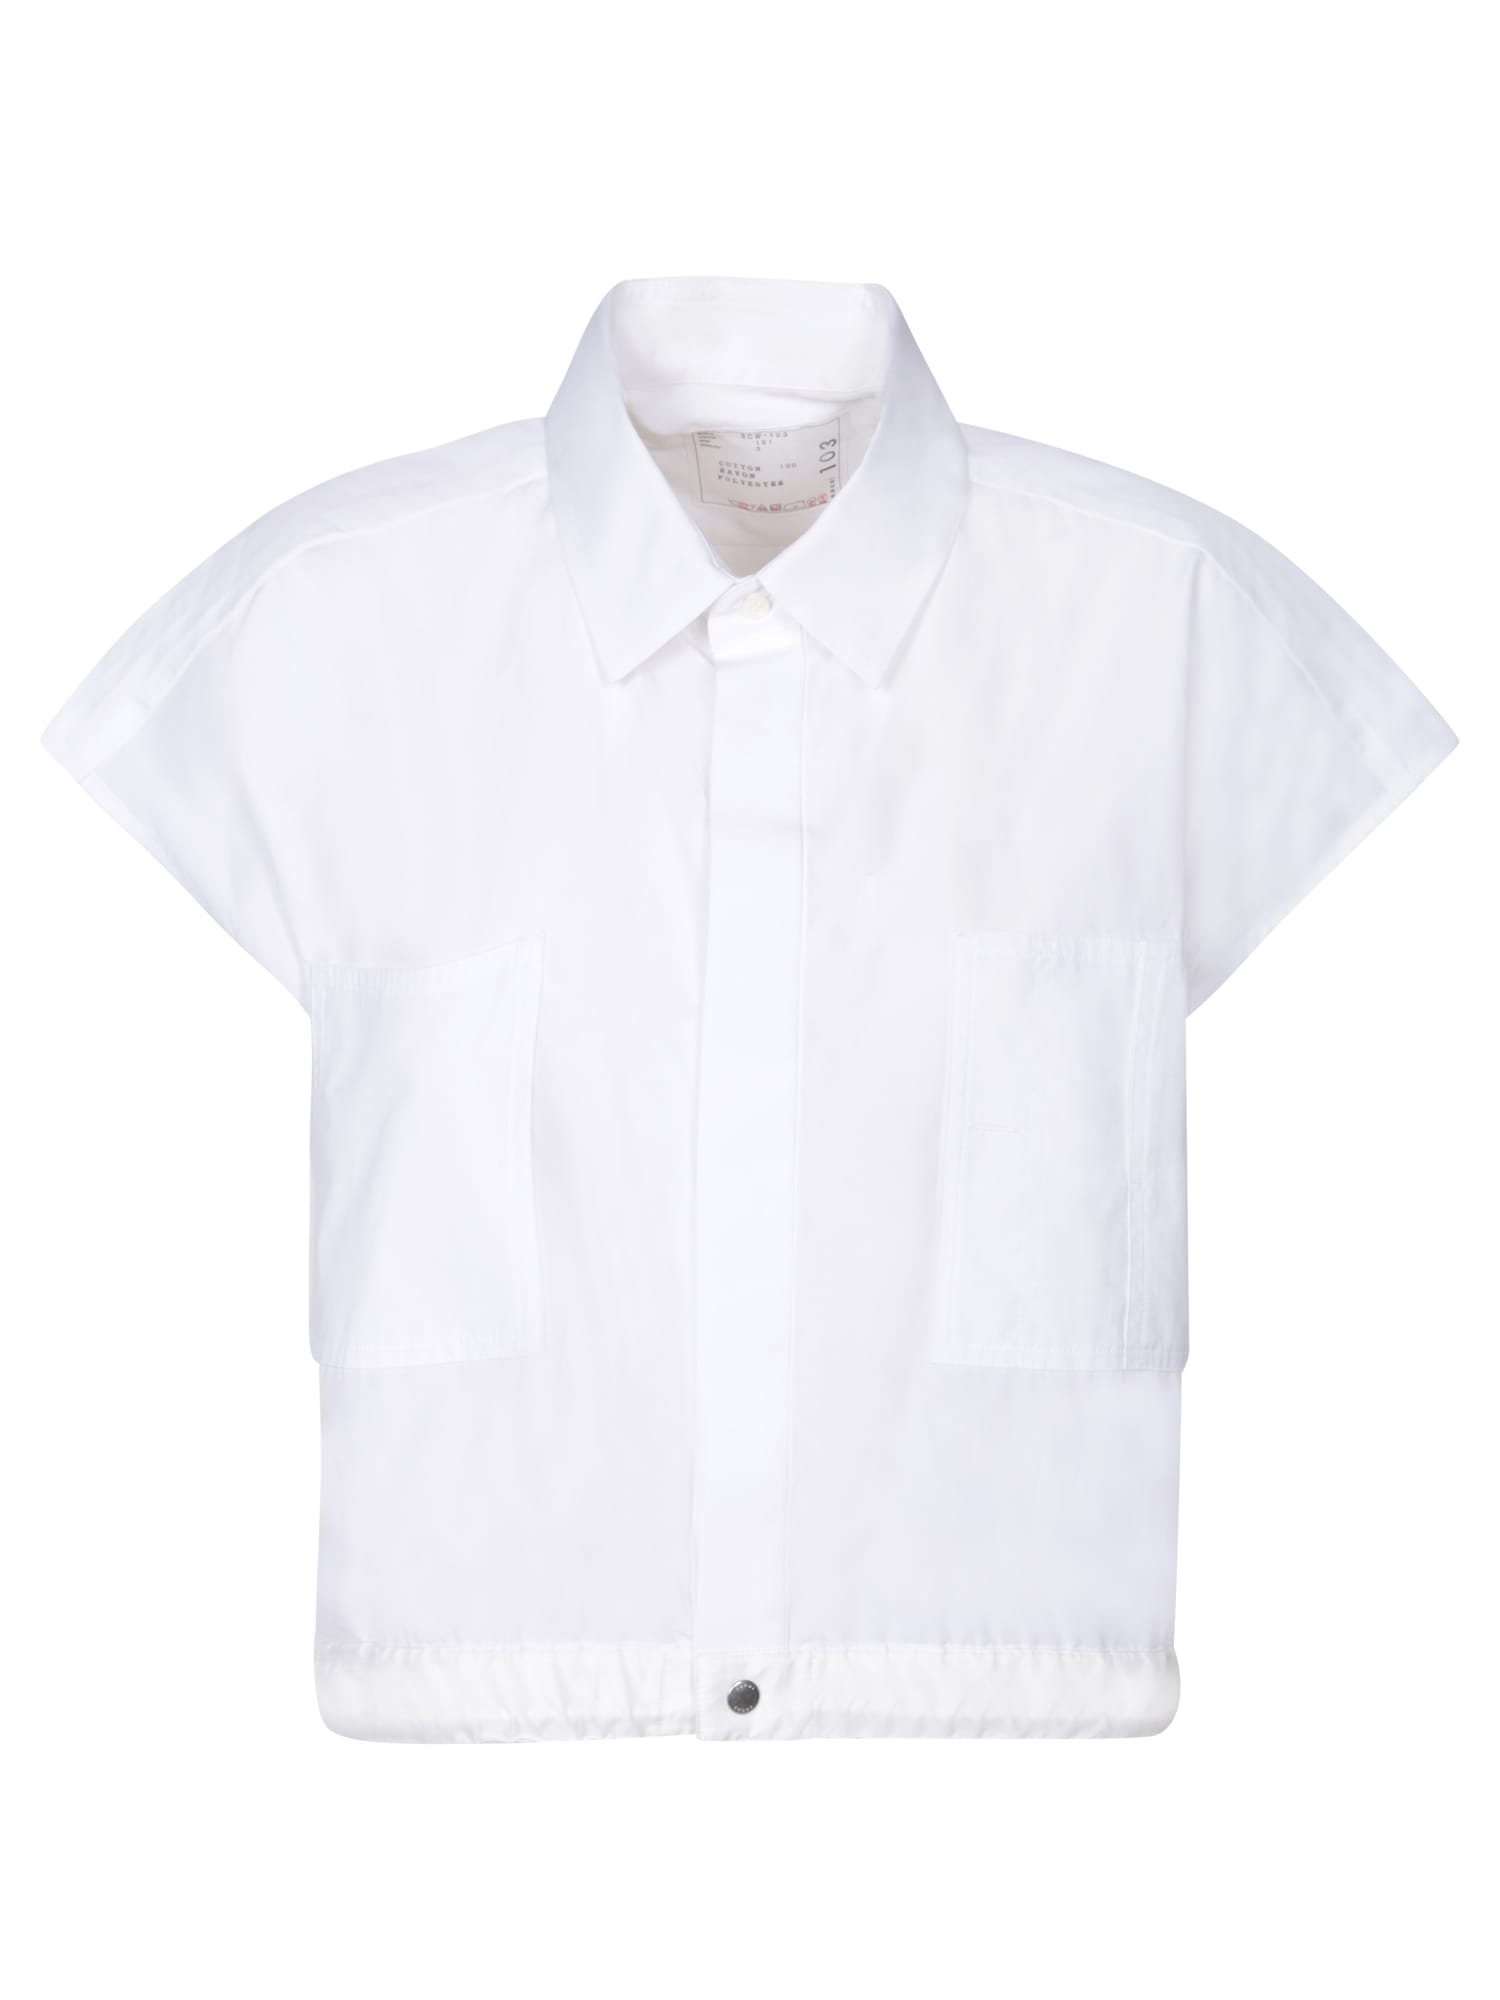 Thomas White Shirt